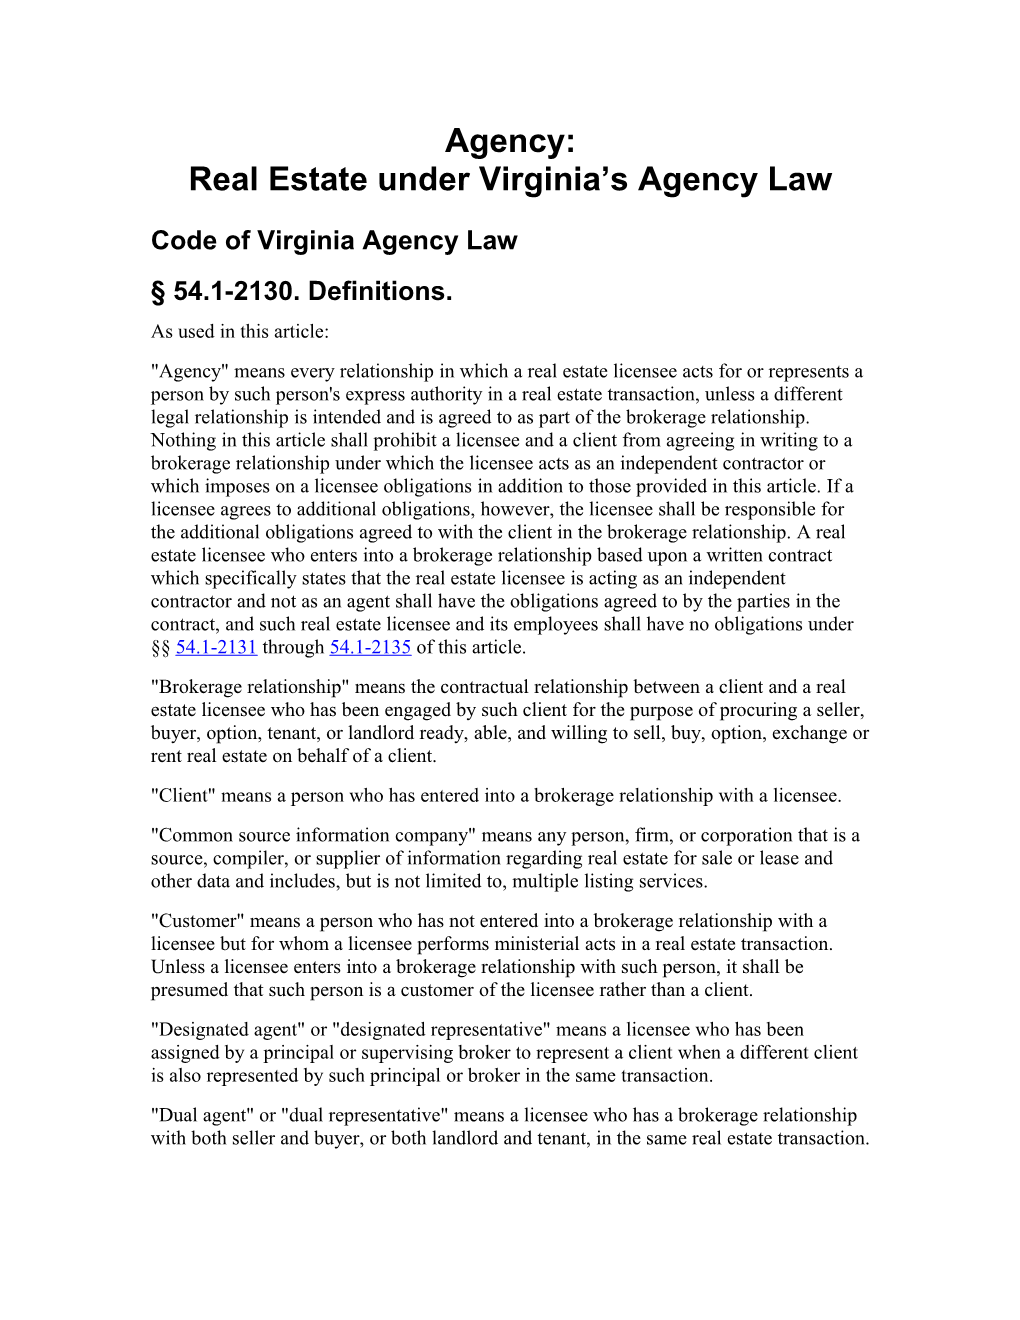 Real Estate Under Virginia S Agency Law